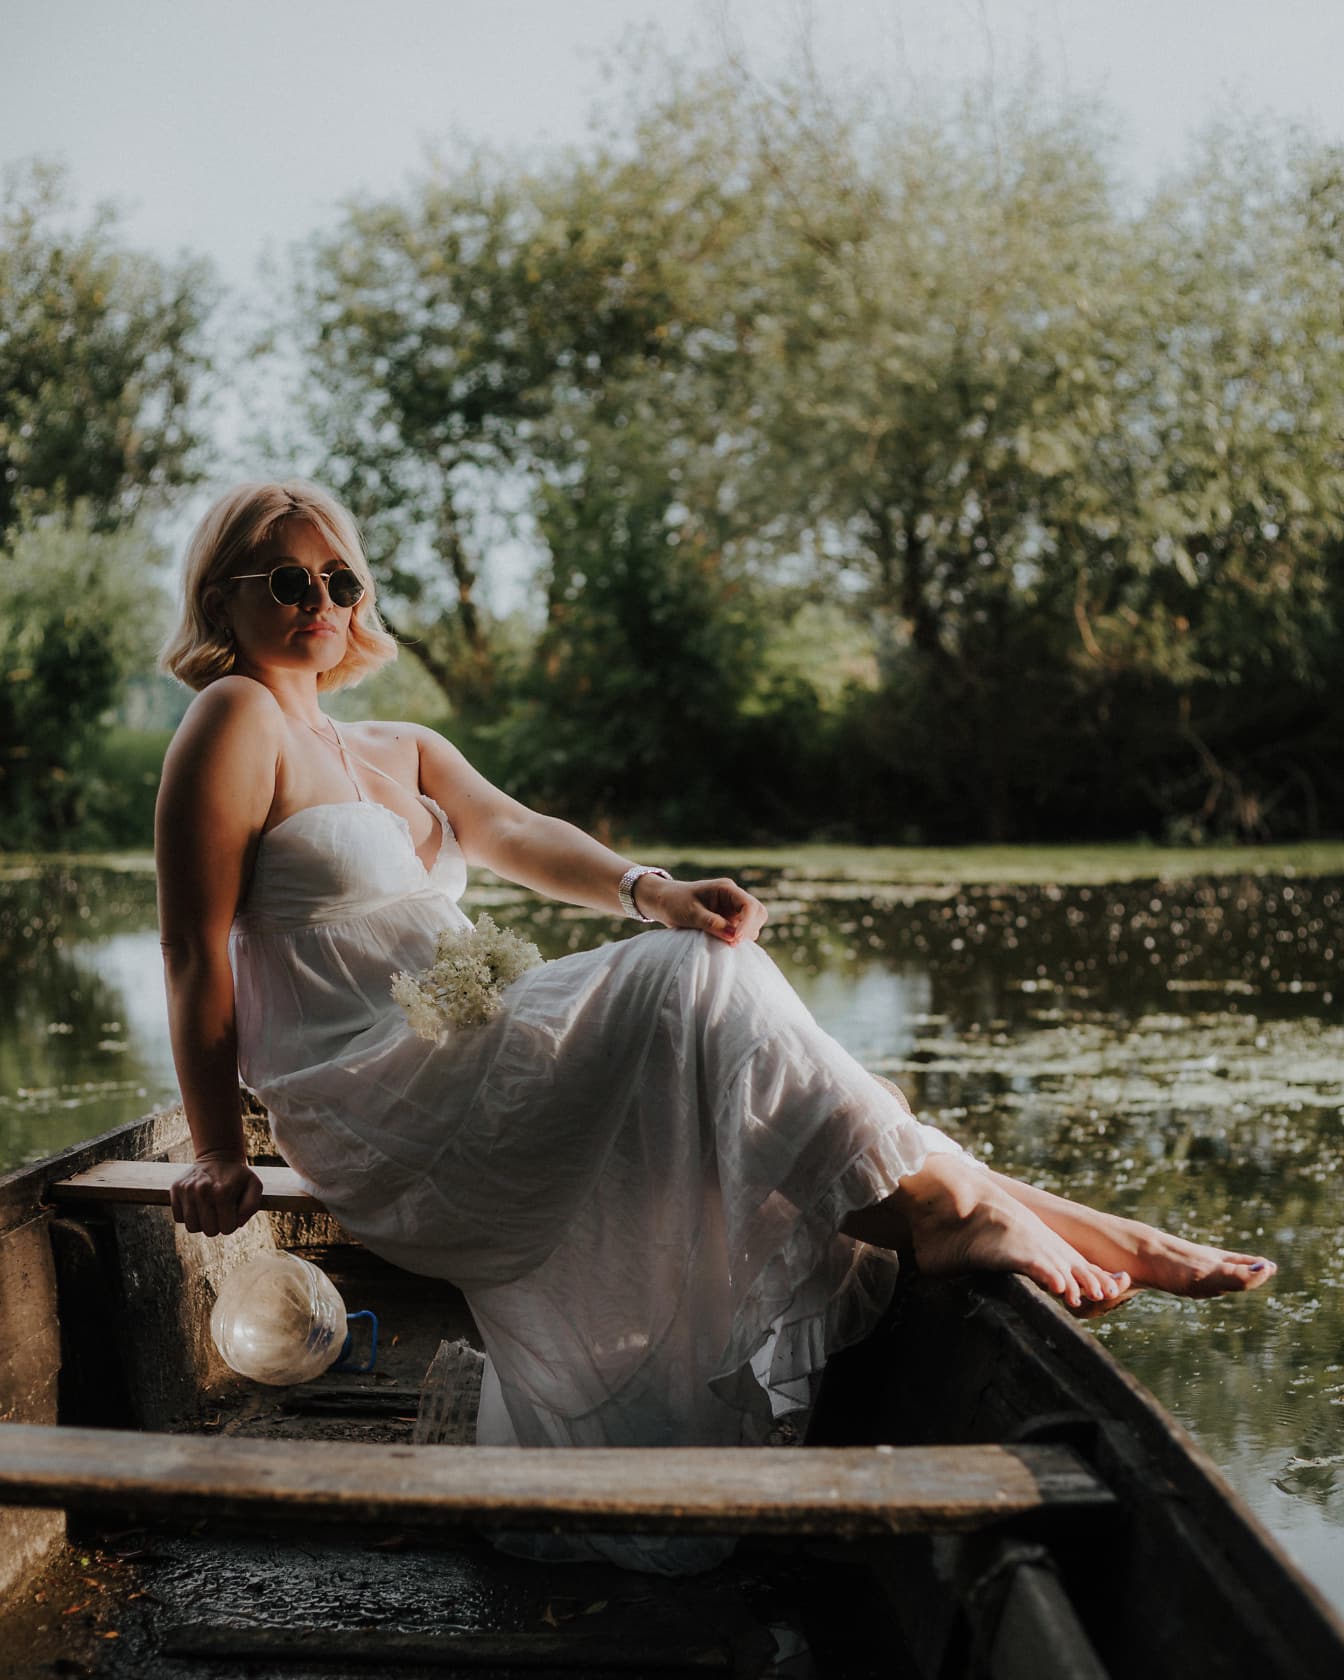 La novia con un vestido de novia blanco en estilo campestre se sienta en un bote en el agua